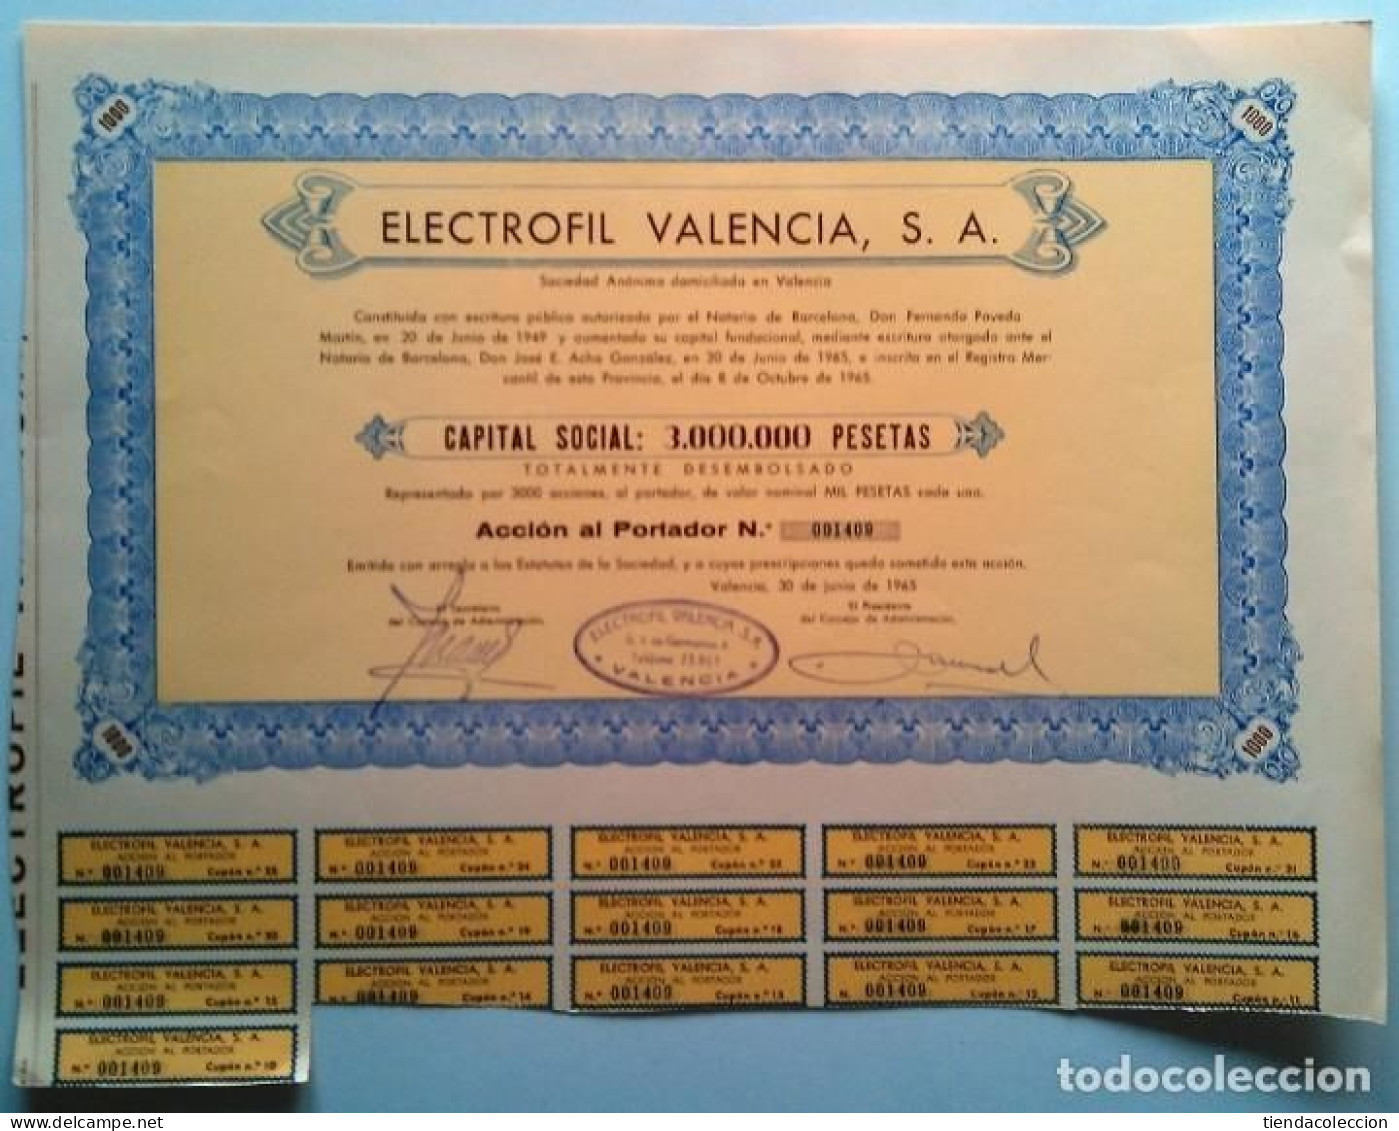 Electrofil Valencia, S. A. - Electricidad & Gas